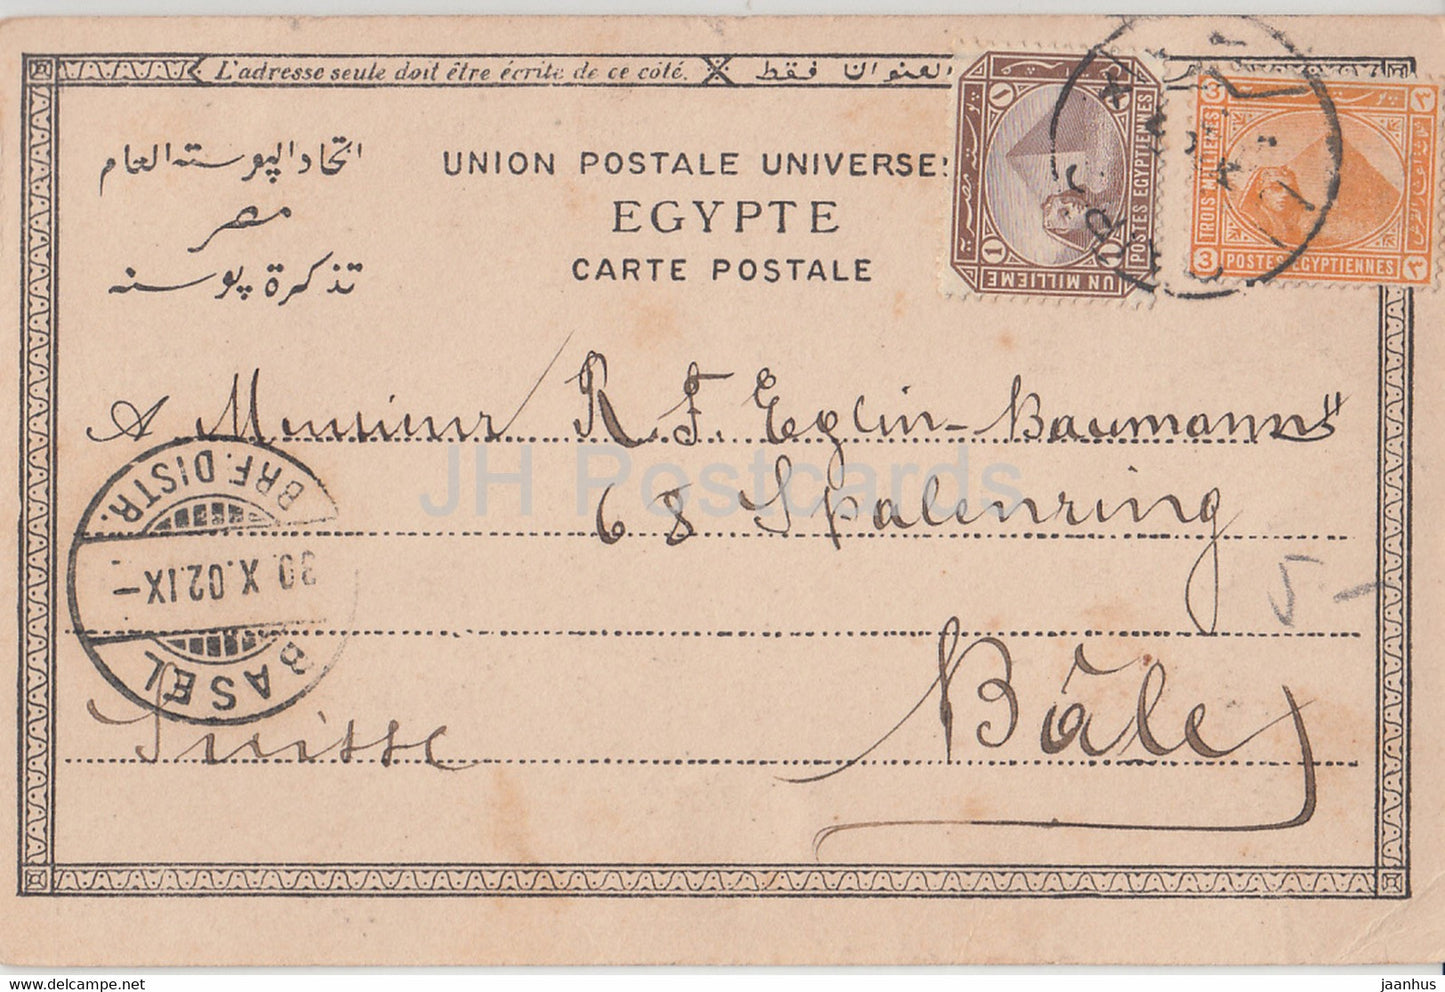 Prise d'un crocodile - animaux - 335 - carte postale ancienne - 1902 - Egypte - occasion